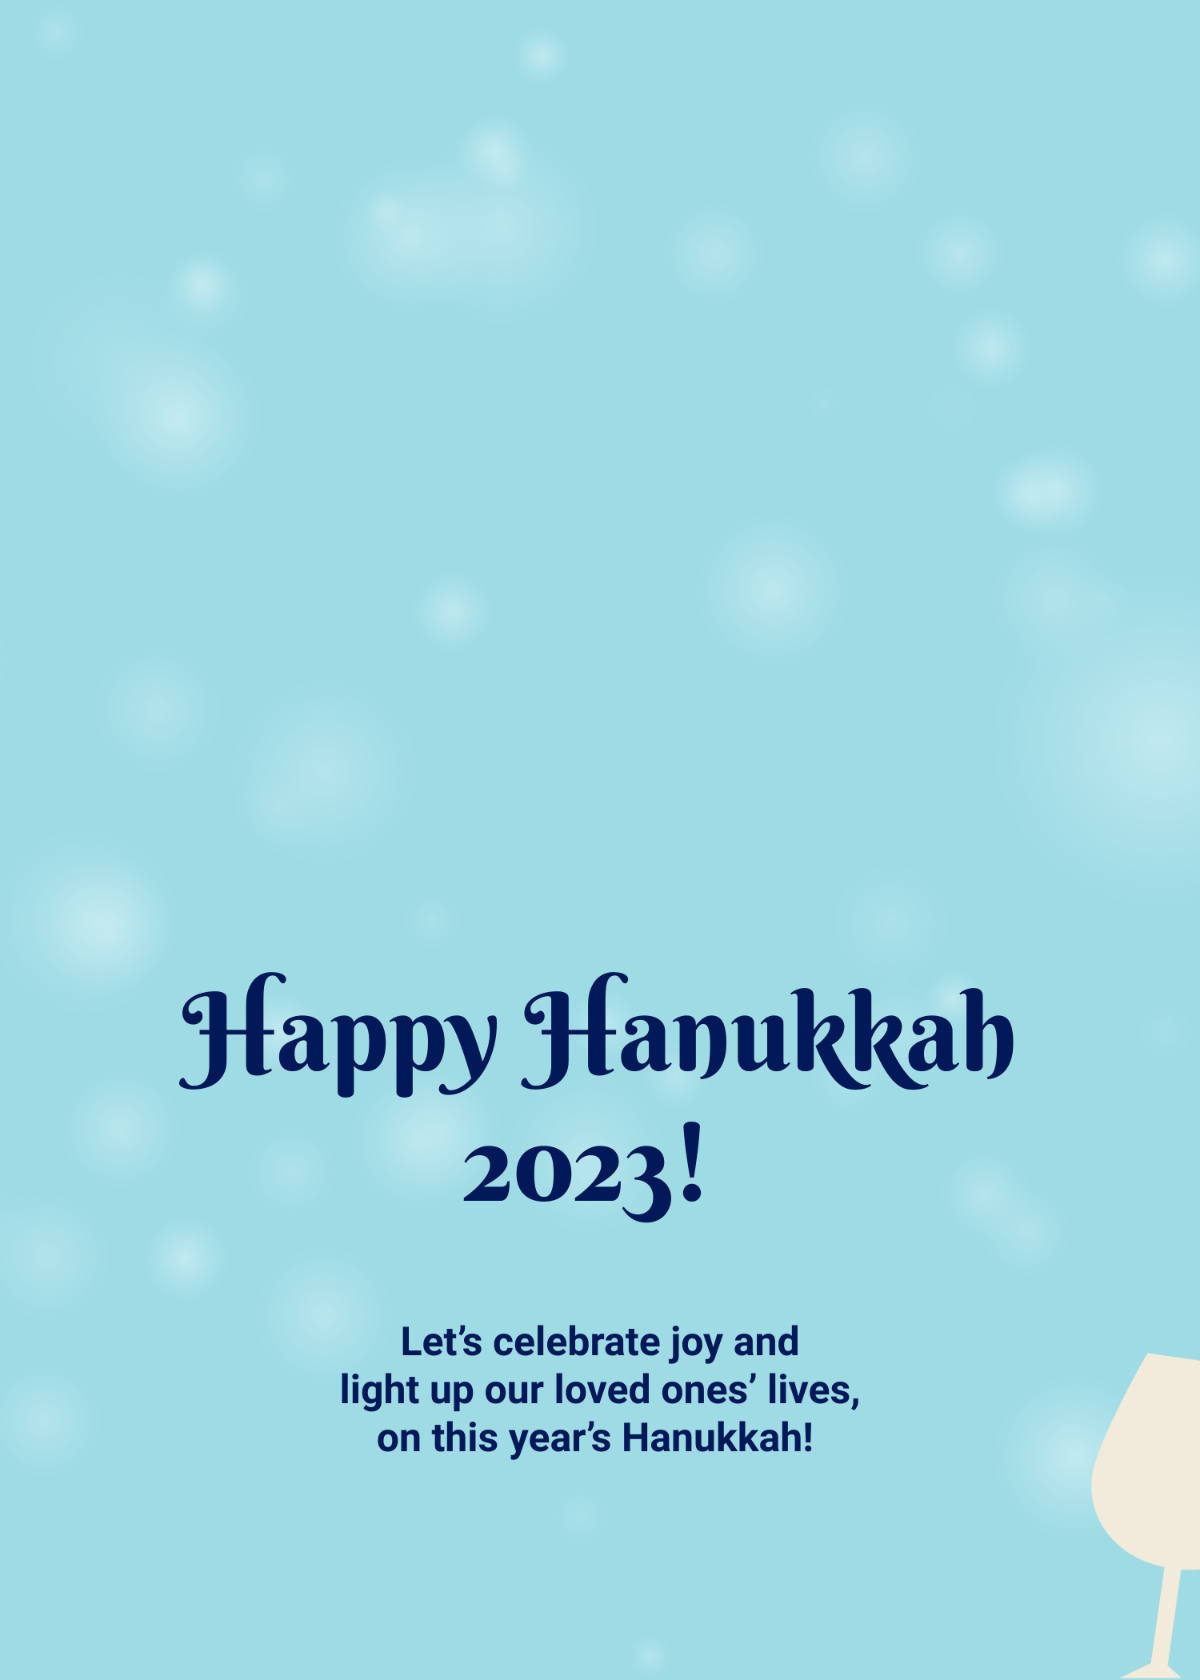 Free Hanukkah 2023 Greeting Template